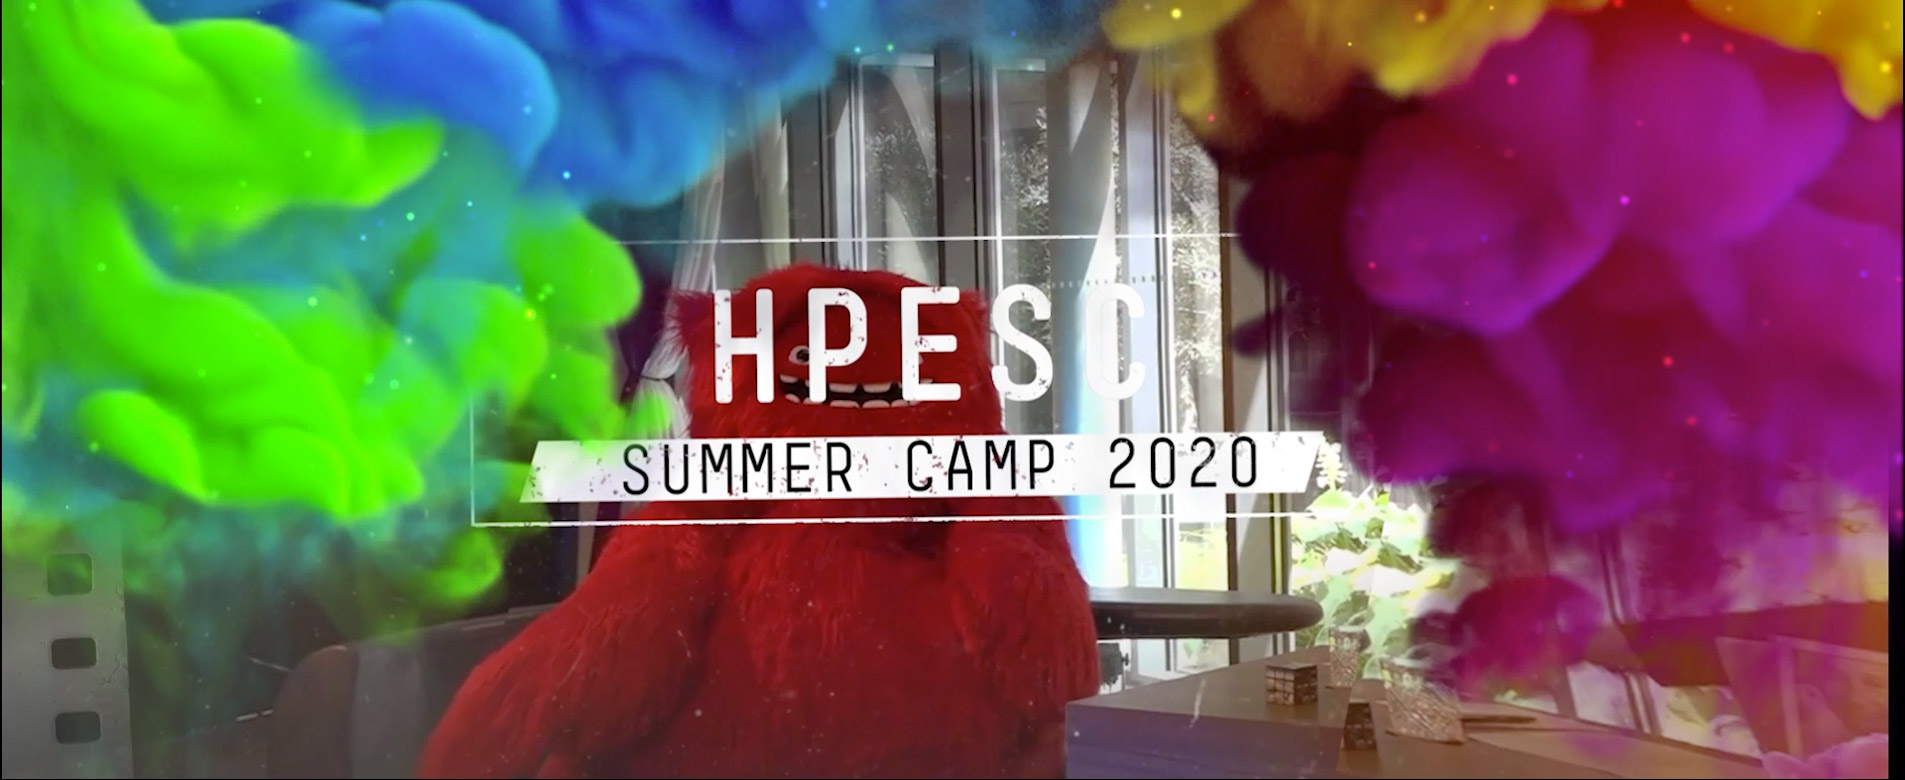 HPESC Summercamp 2020